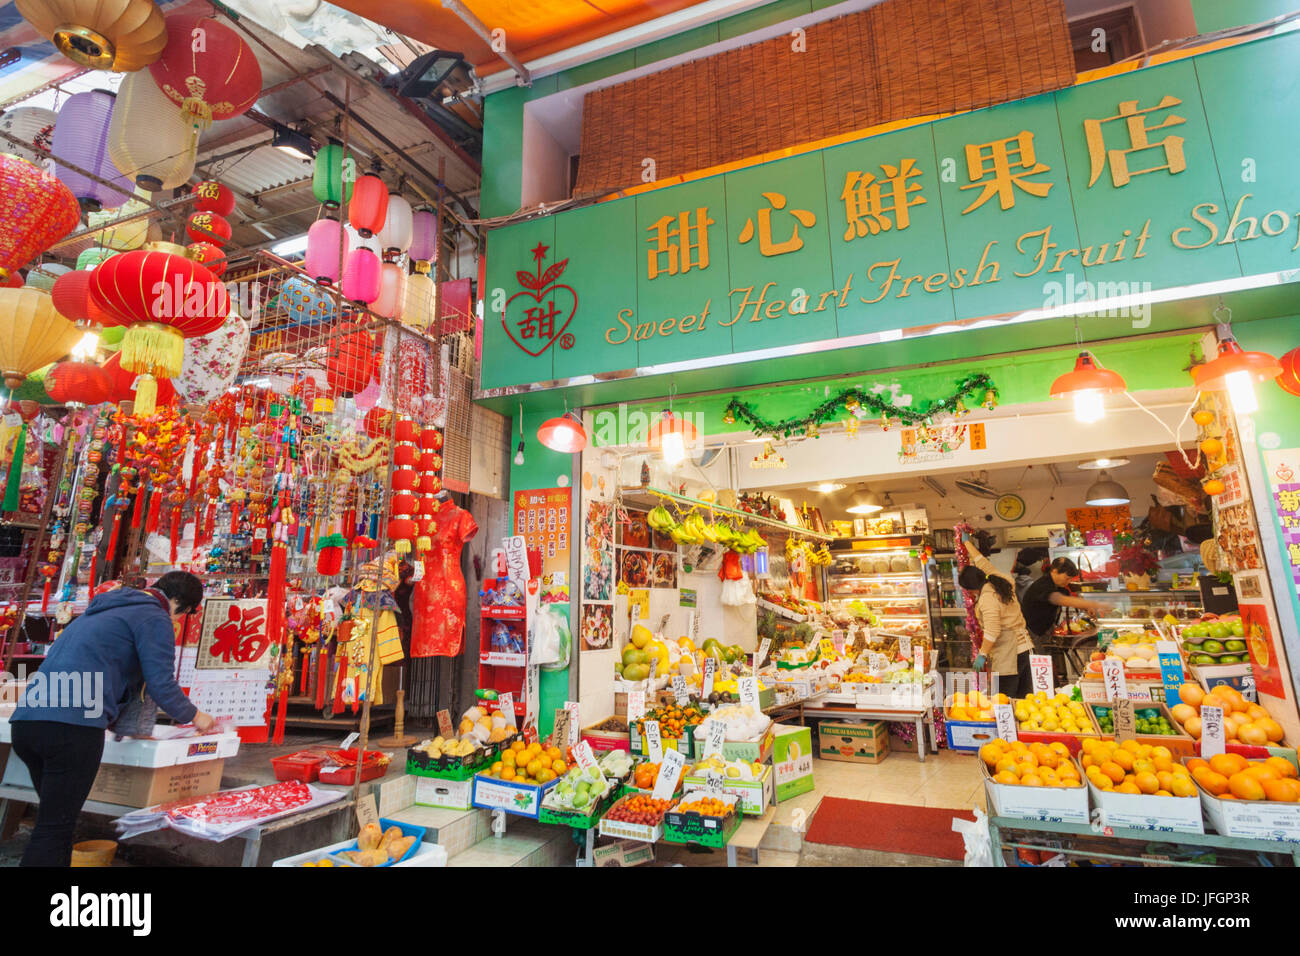 La Chine, Hong Kong, Central, typique des magasins chinois Banque D'Images